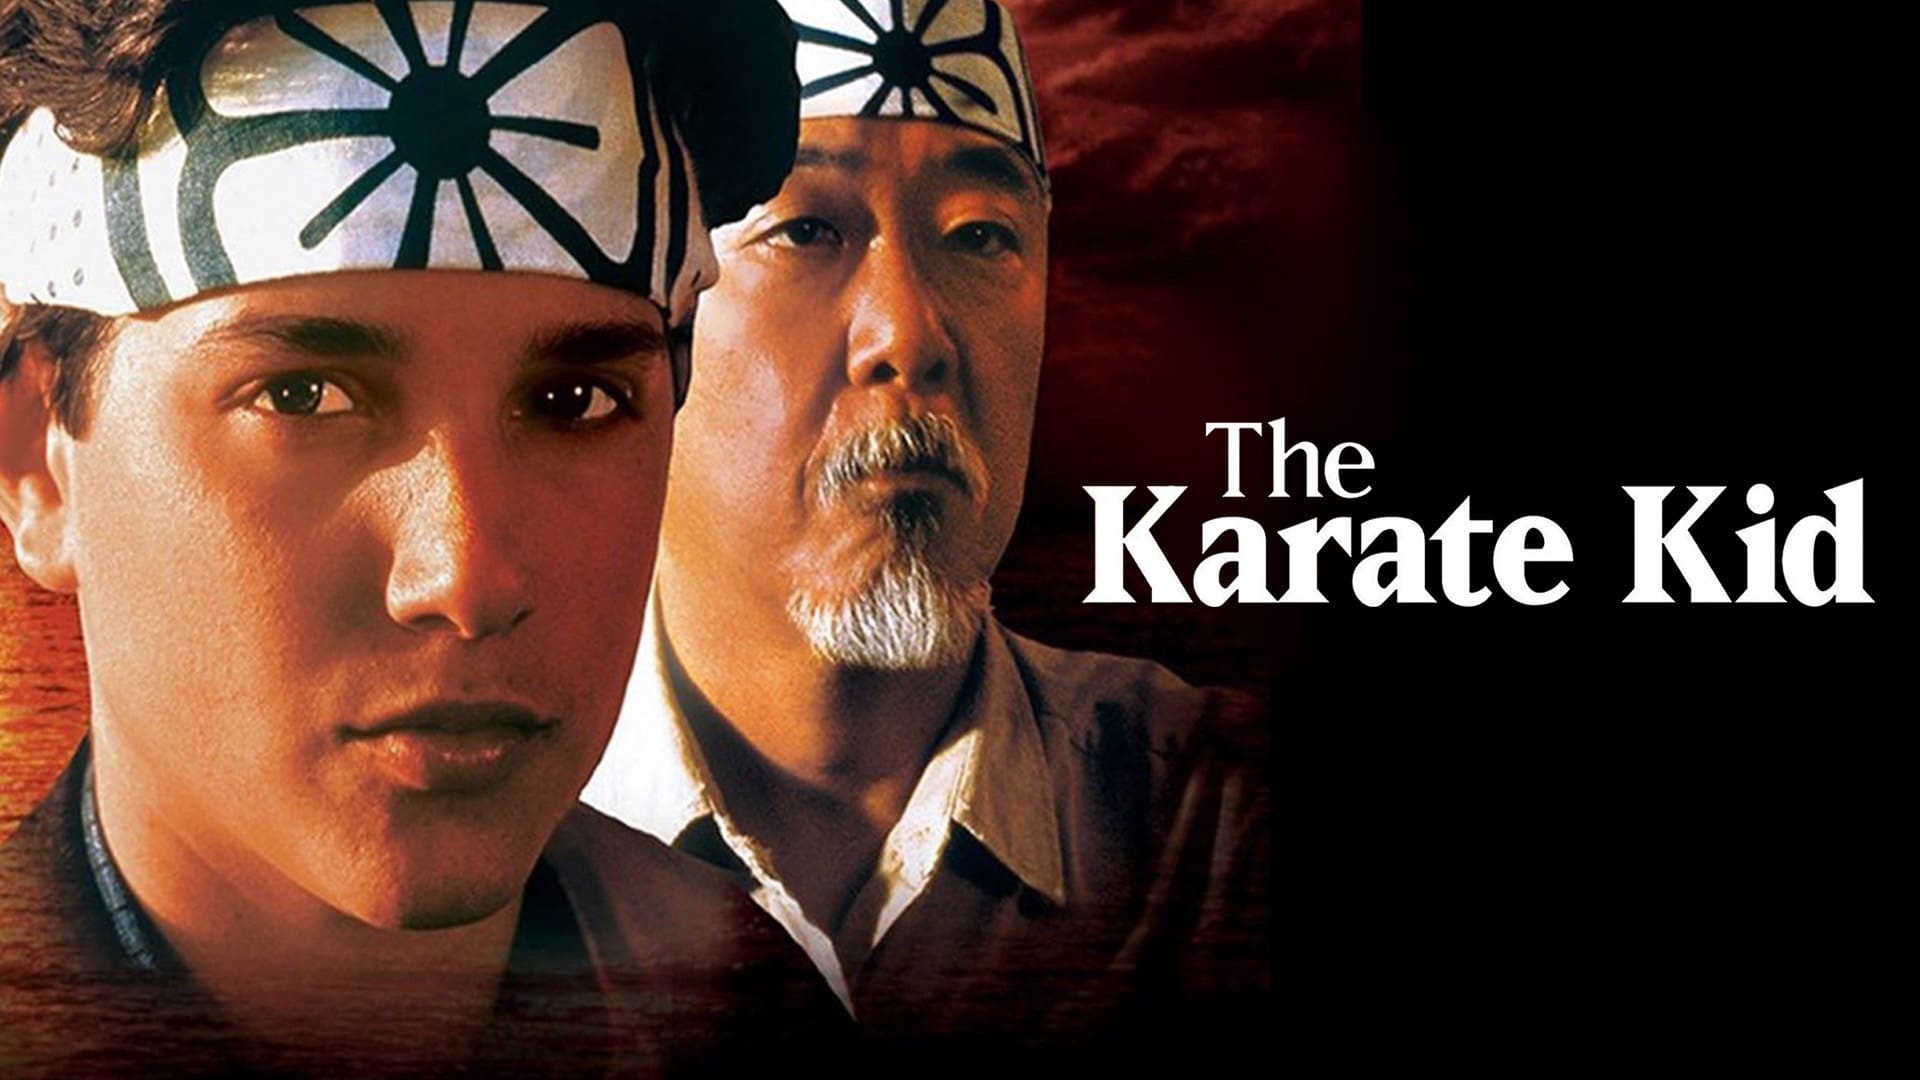 the karate kid 1080p hd movie download in tamil